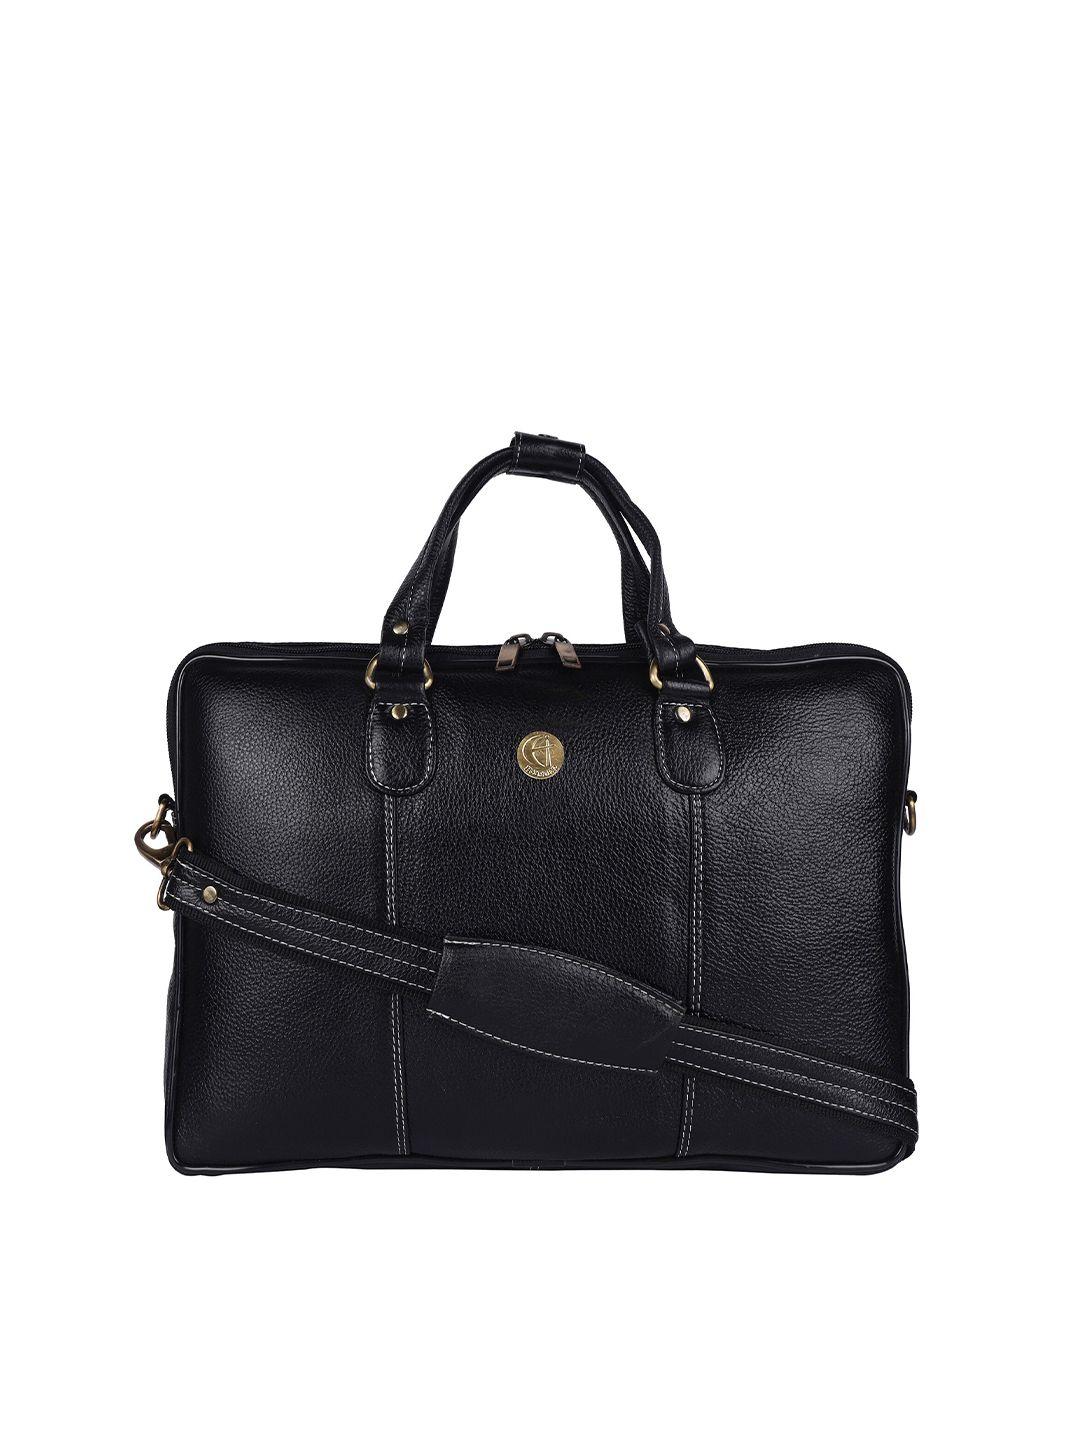 hileder unisex black textured leather  15" laptop bag